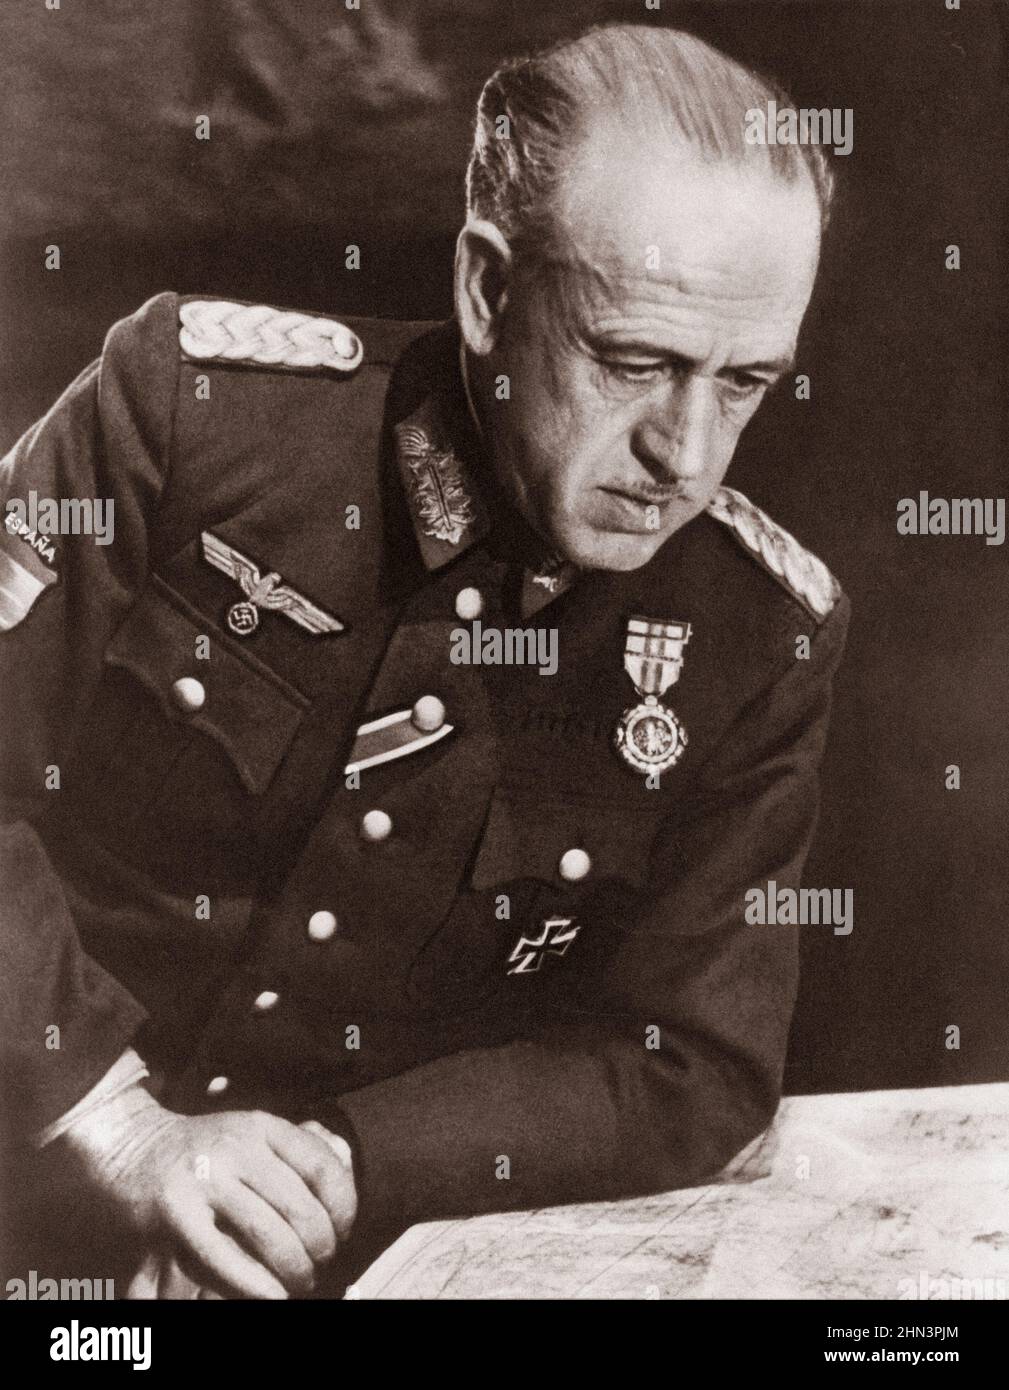 Photo d'archives d'Emilio Esteban Infantes. Emilio Esteban-Infantes Martín (1892 – 1962) était un officier espagnol qui a servi pendant la guerre civile espagnole Banque D'Images